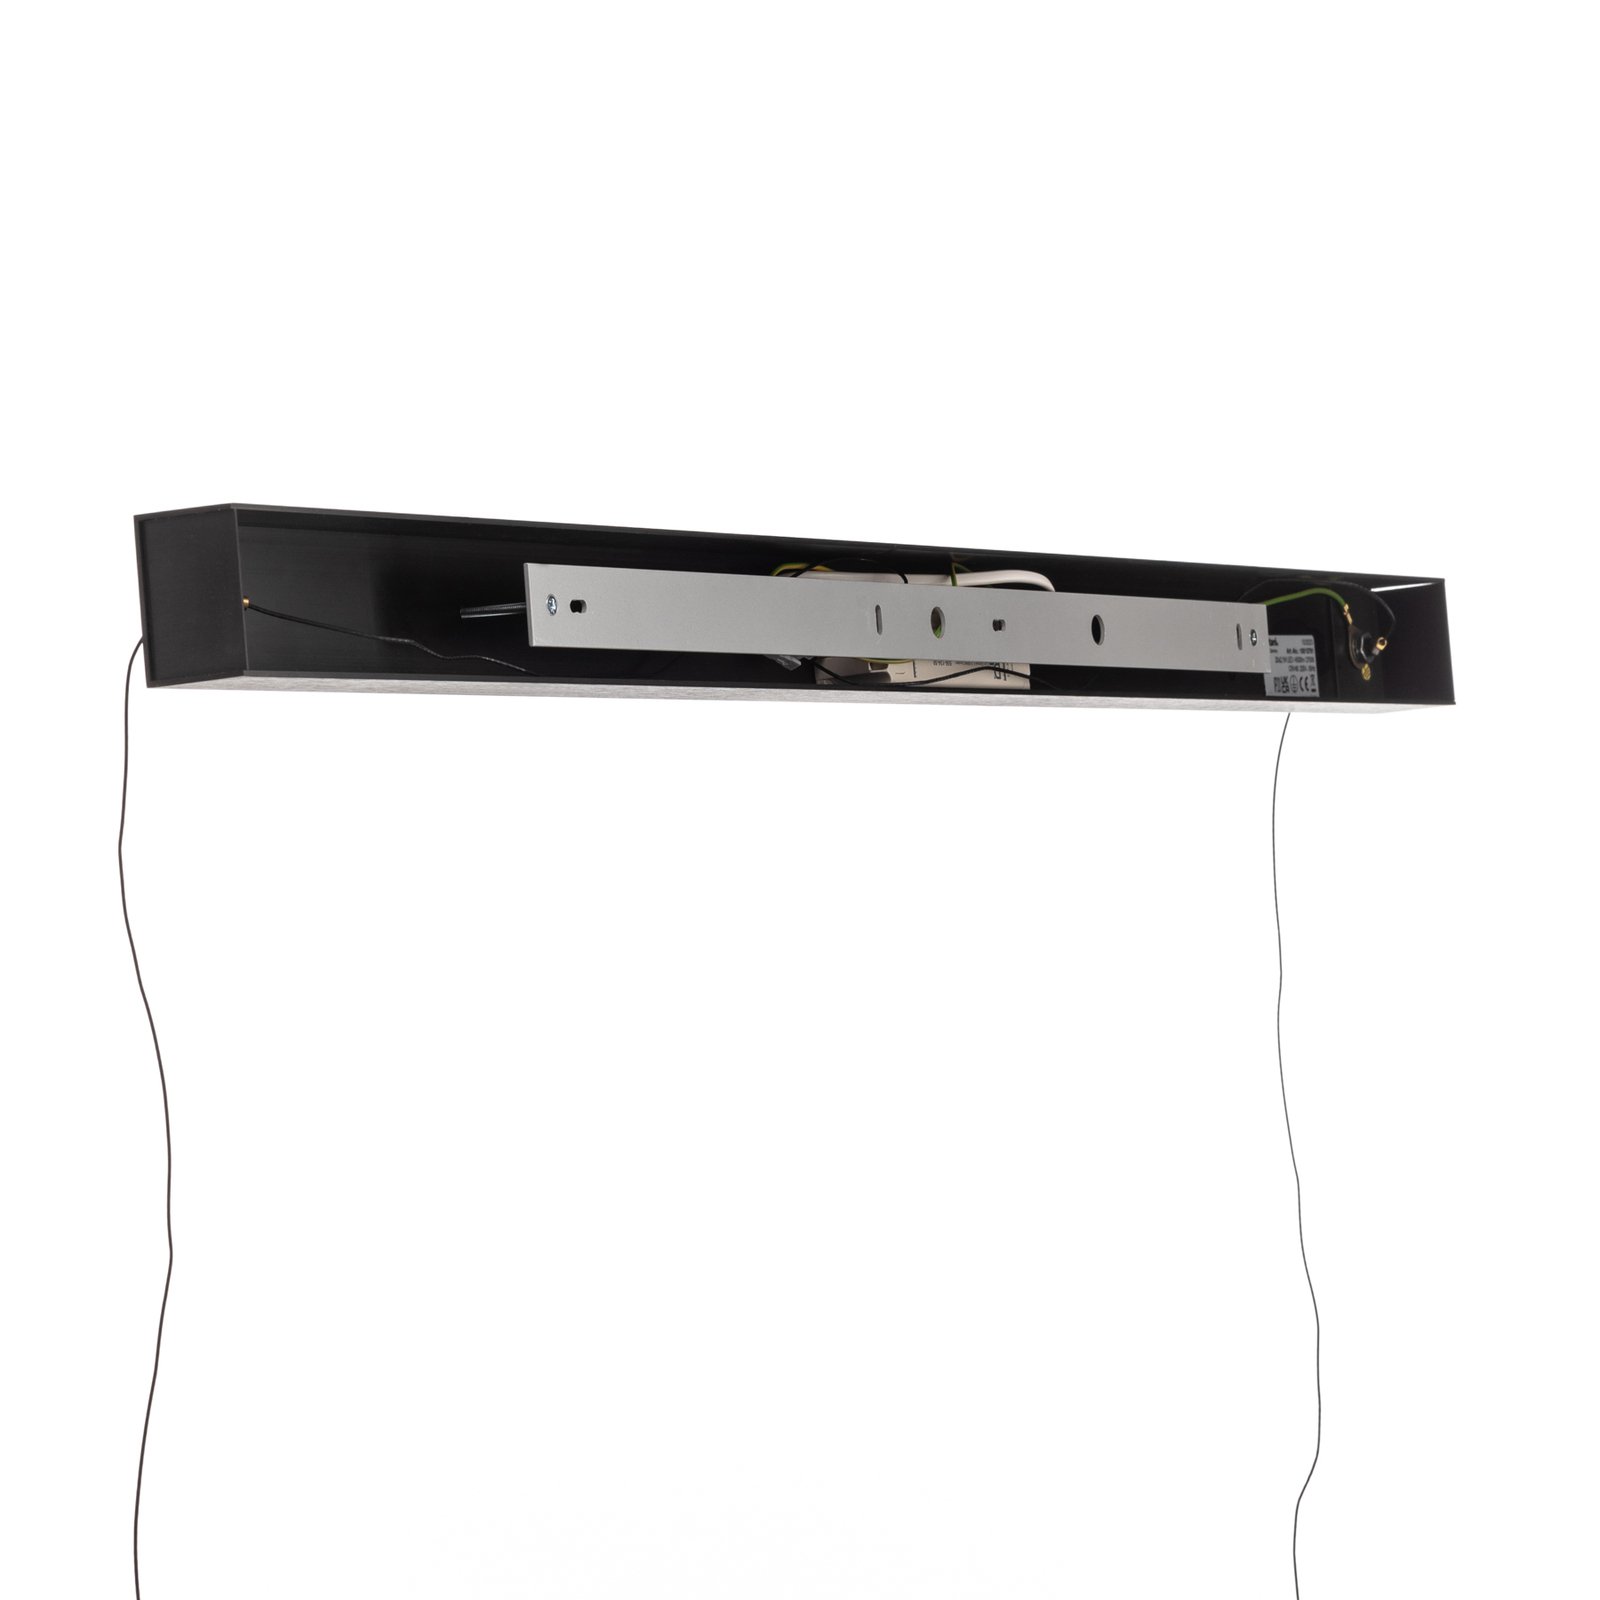 Quitani Lysia LED-Pendel, oxidiert/schwarz, 118 cm